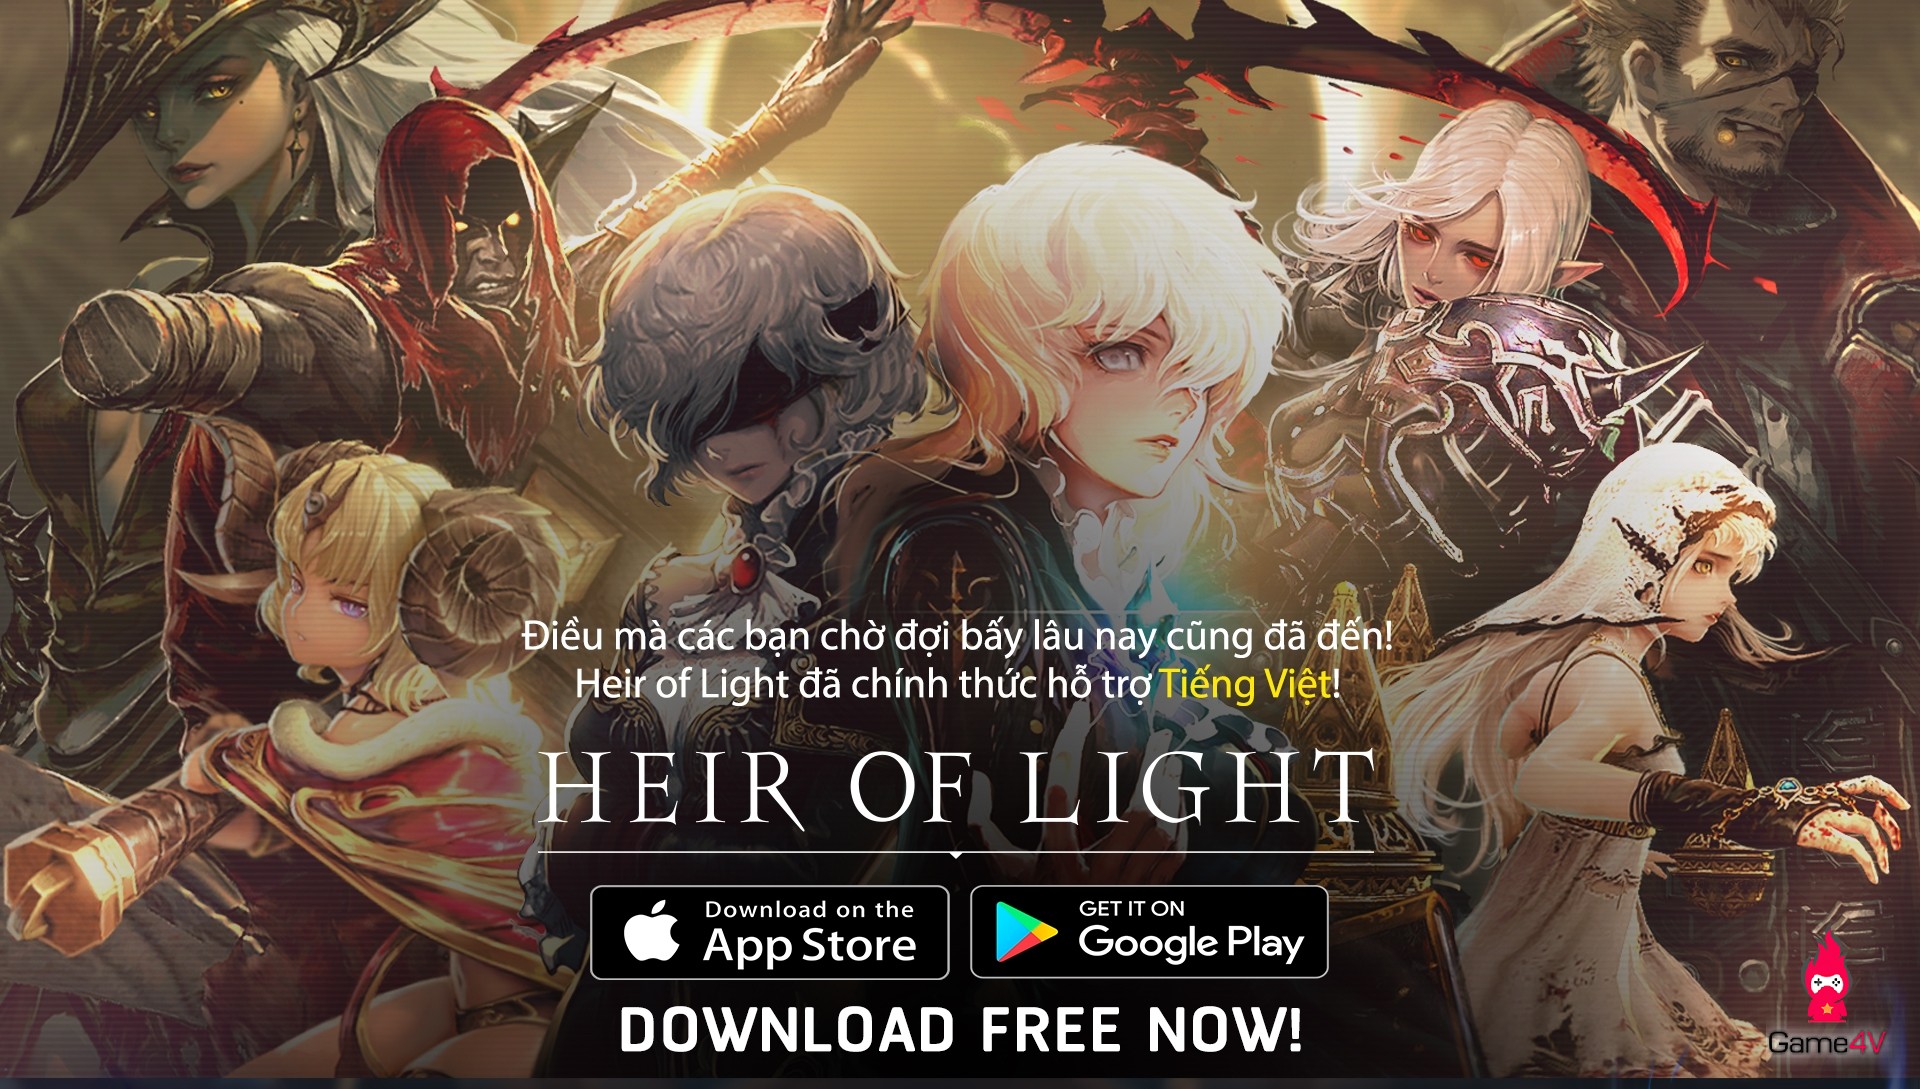 Heir of Light – tựa game Gothic của Gamevil sắp ra mắt phiên bản Việt hóa